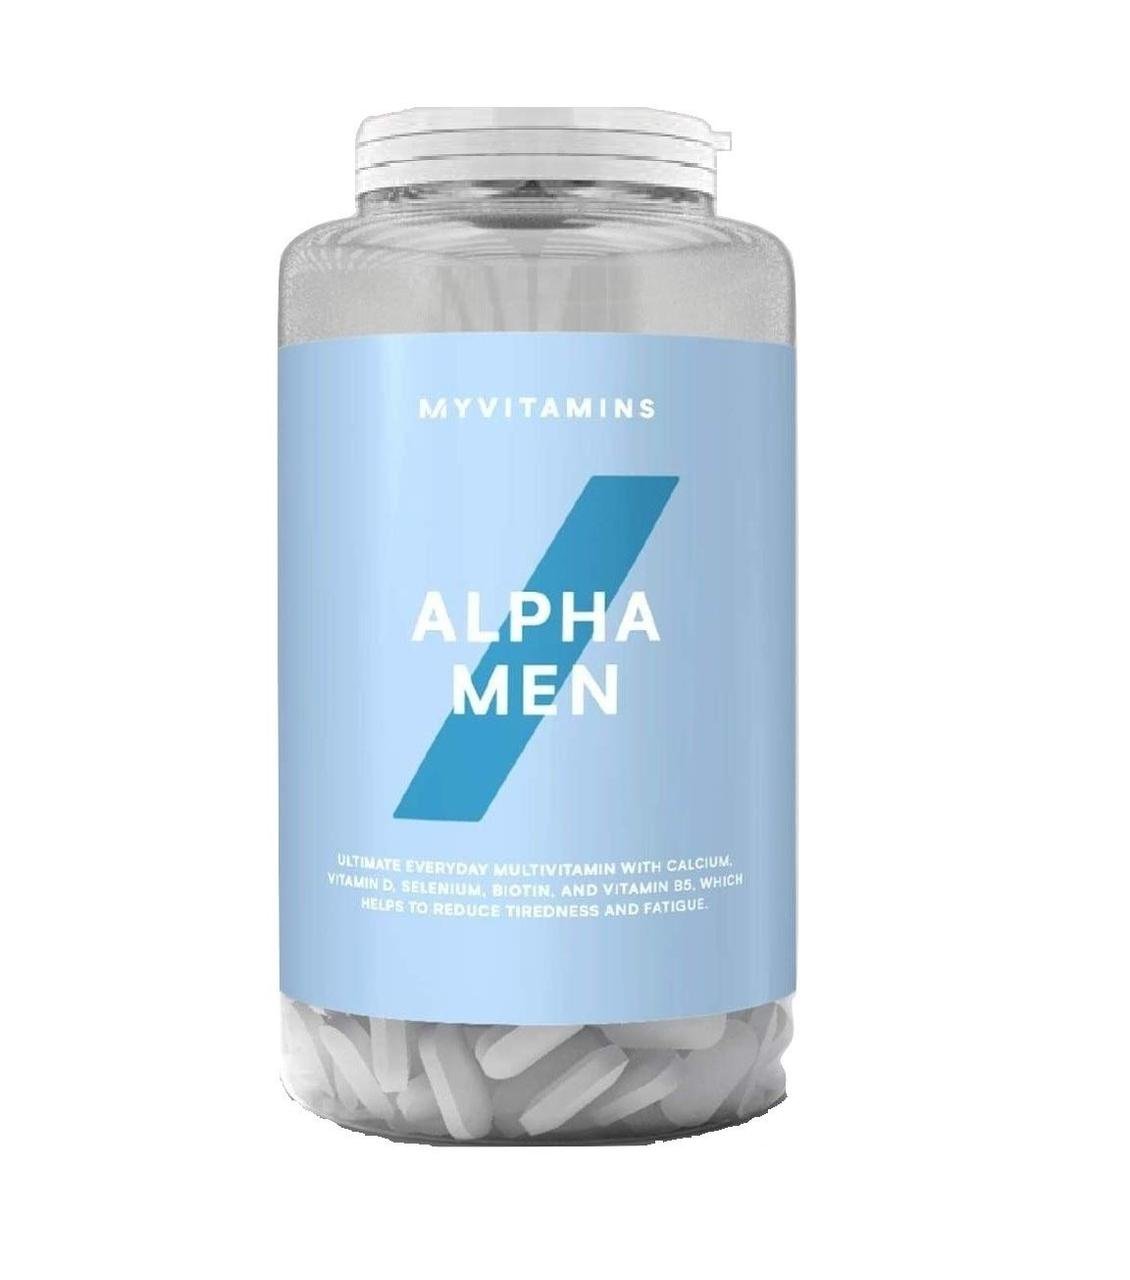 Alpha Men MyProtein 120 tabs,  мл, MyProtein. Витамины и минералы. Поддержание здоровья Укрепление иммунитета 